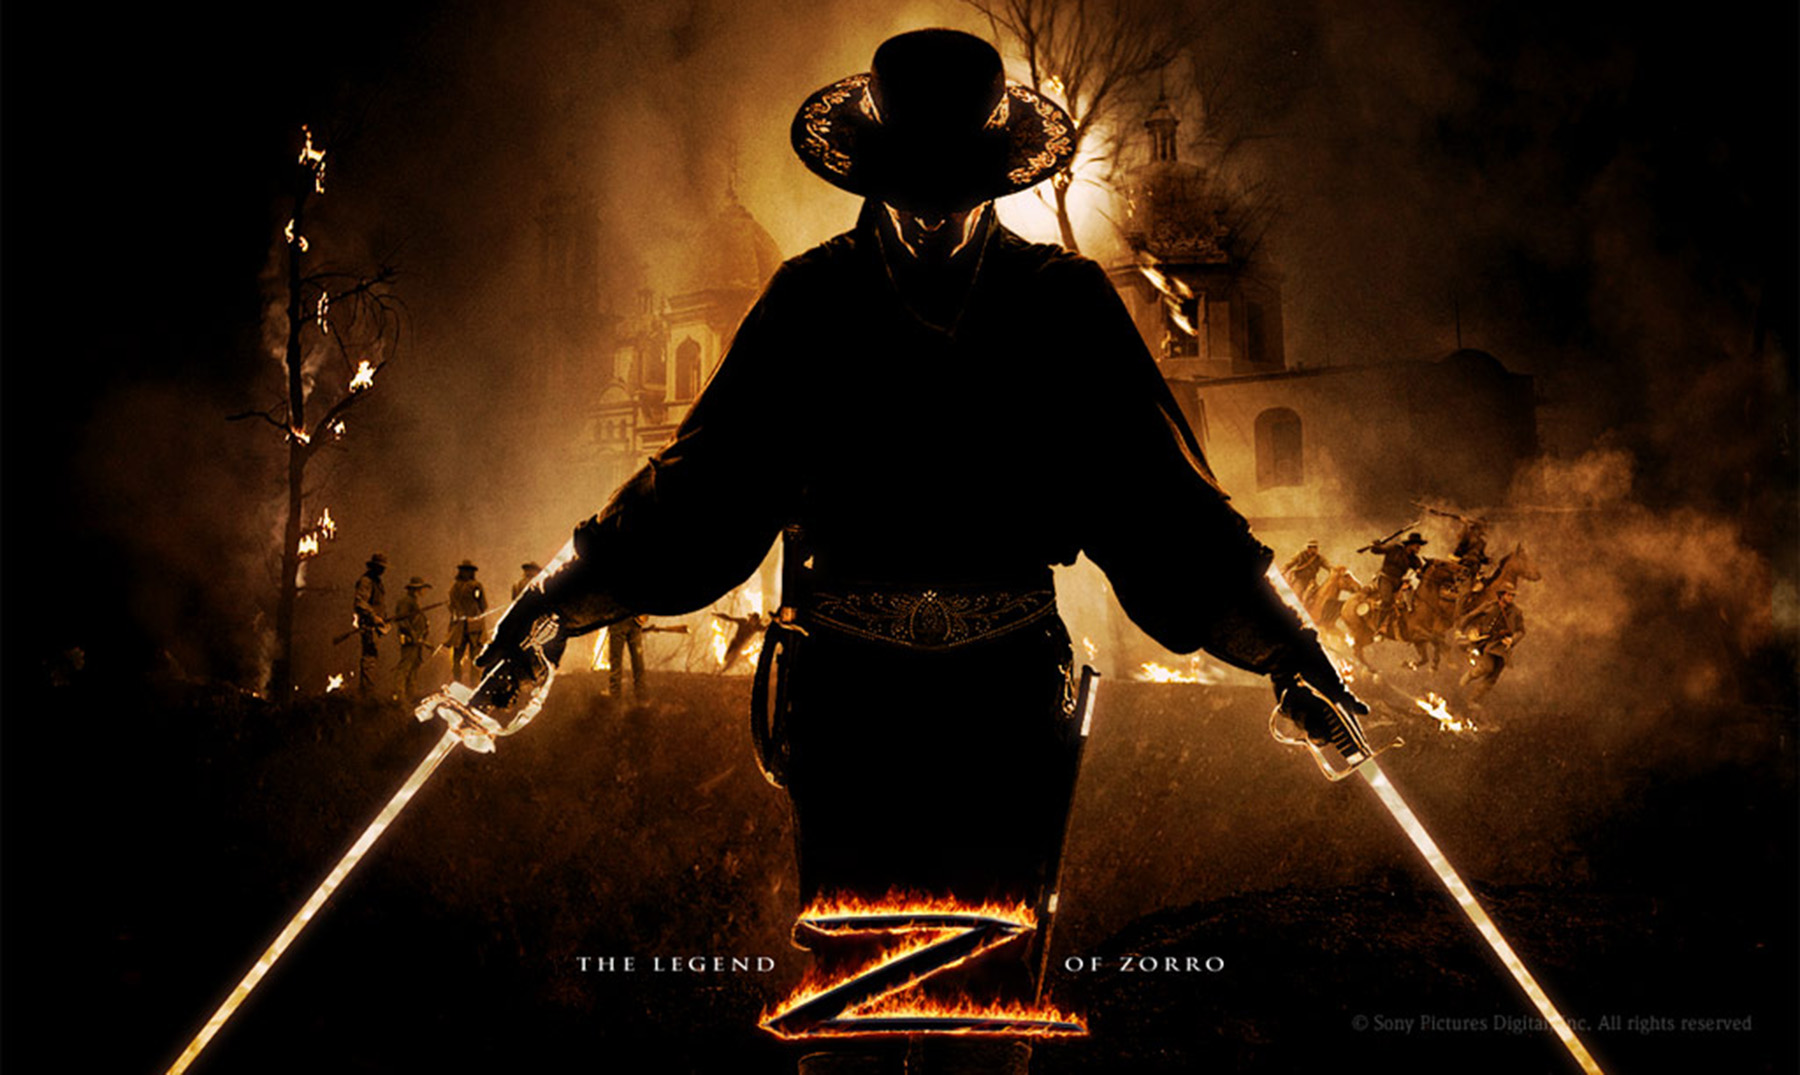 ¿Sabías que El Zorro pronto tendrá 100 años?